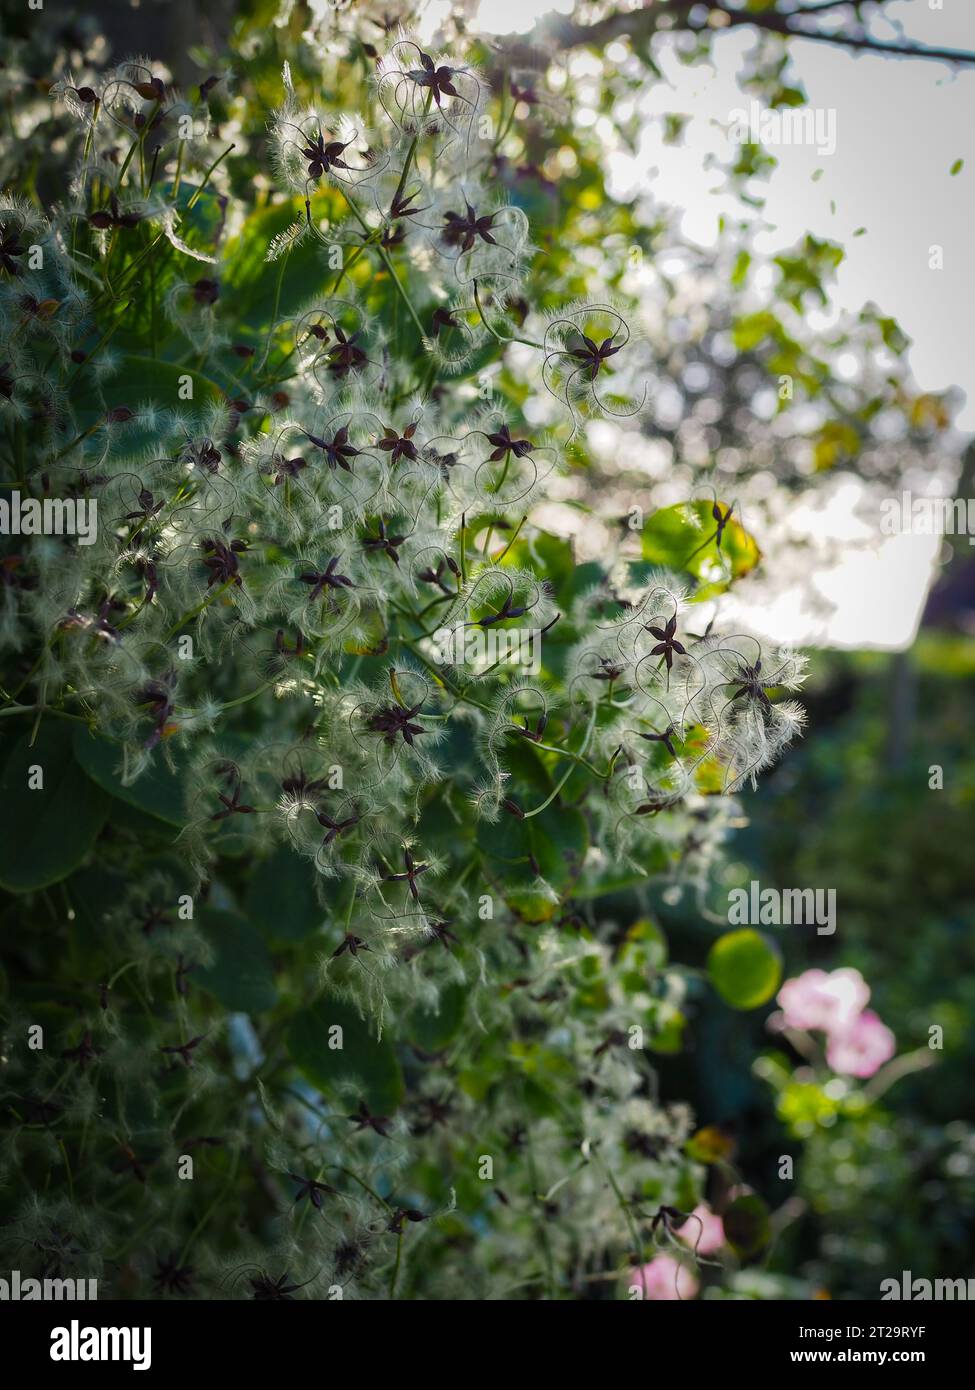 Nahaufnahme der beleuchteten flauschigen Samenköpfe einer nicht identifizierten KletterClematis bei Herbstsonne in einem britischen Hüttengarten Stockfoto